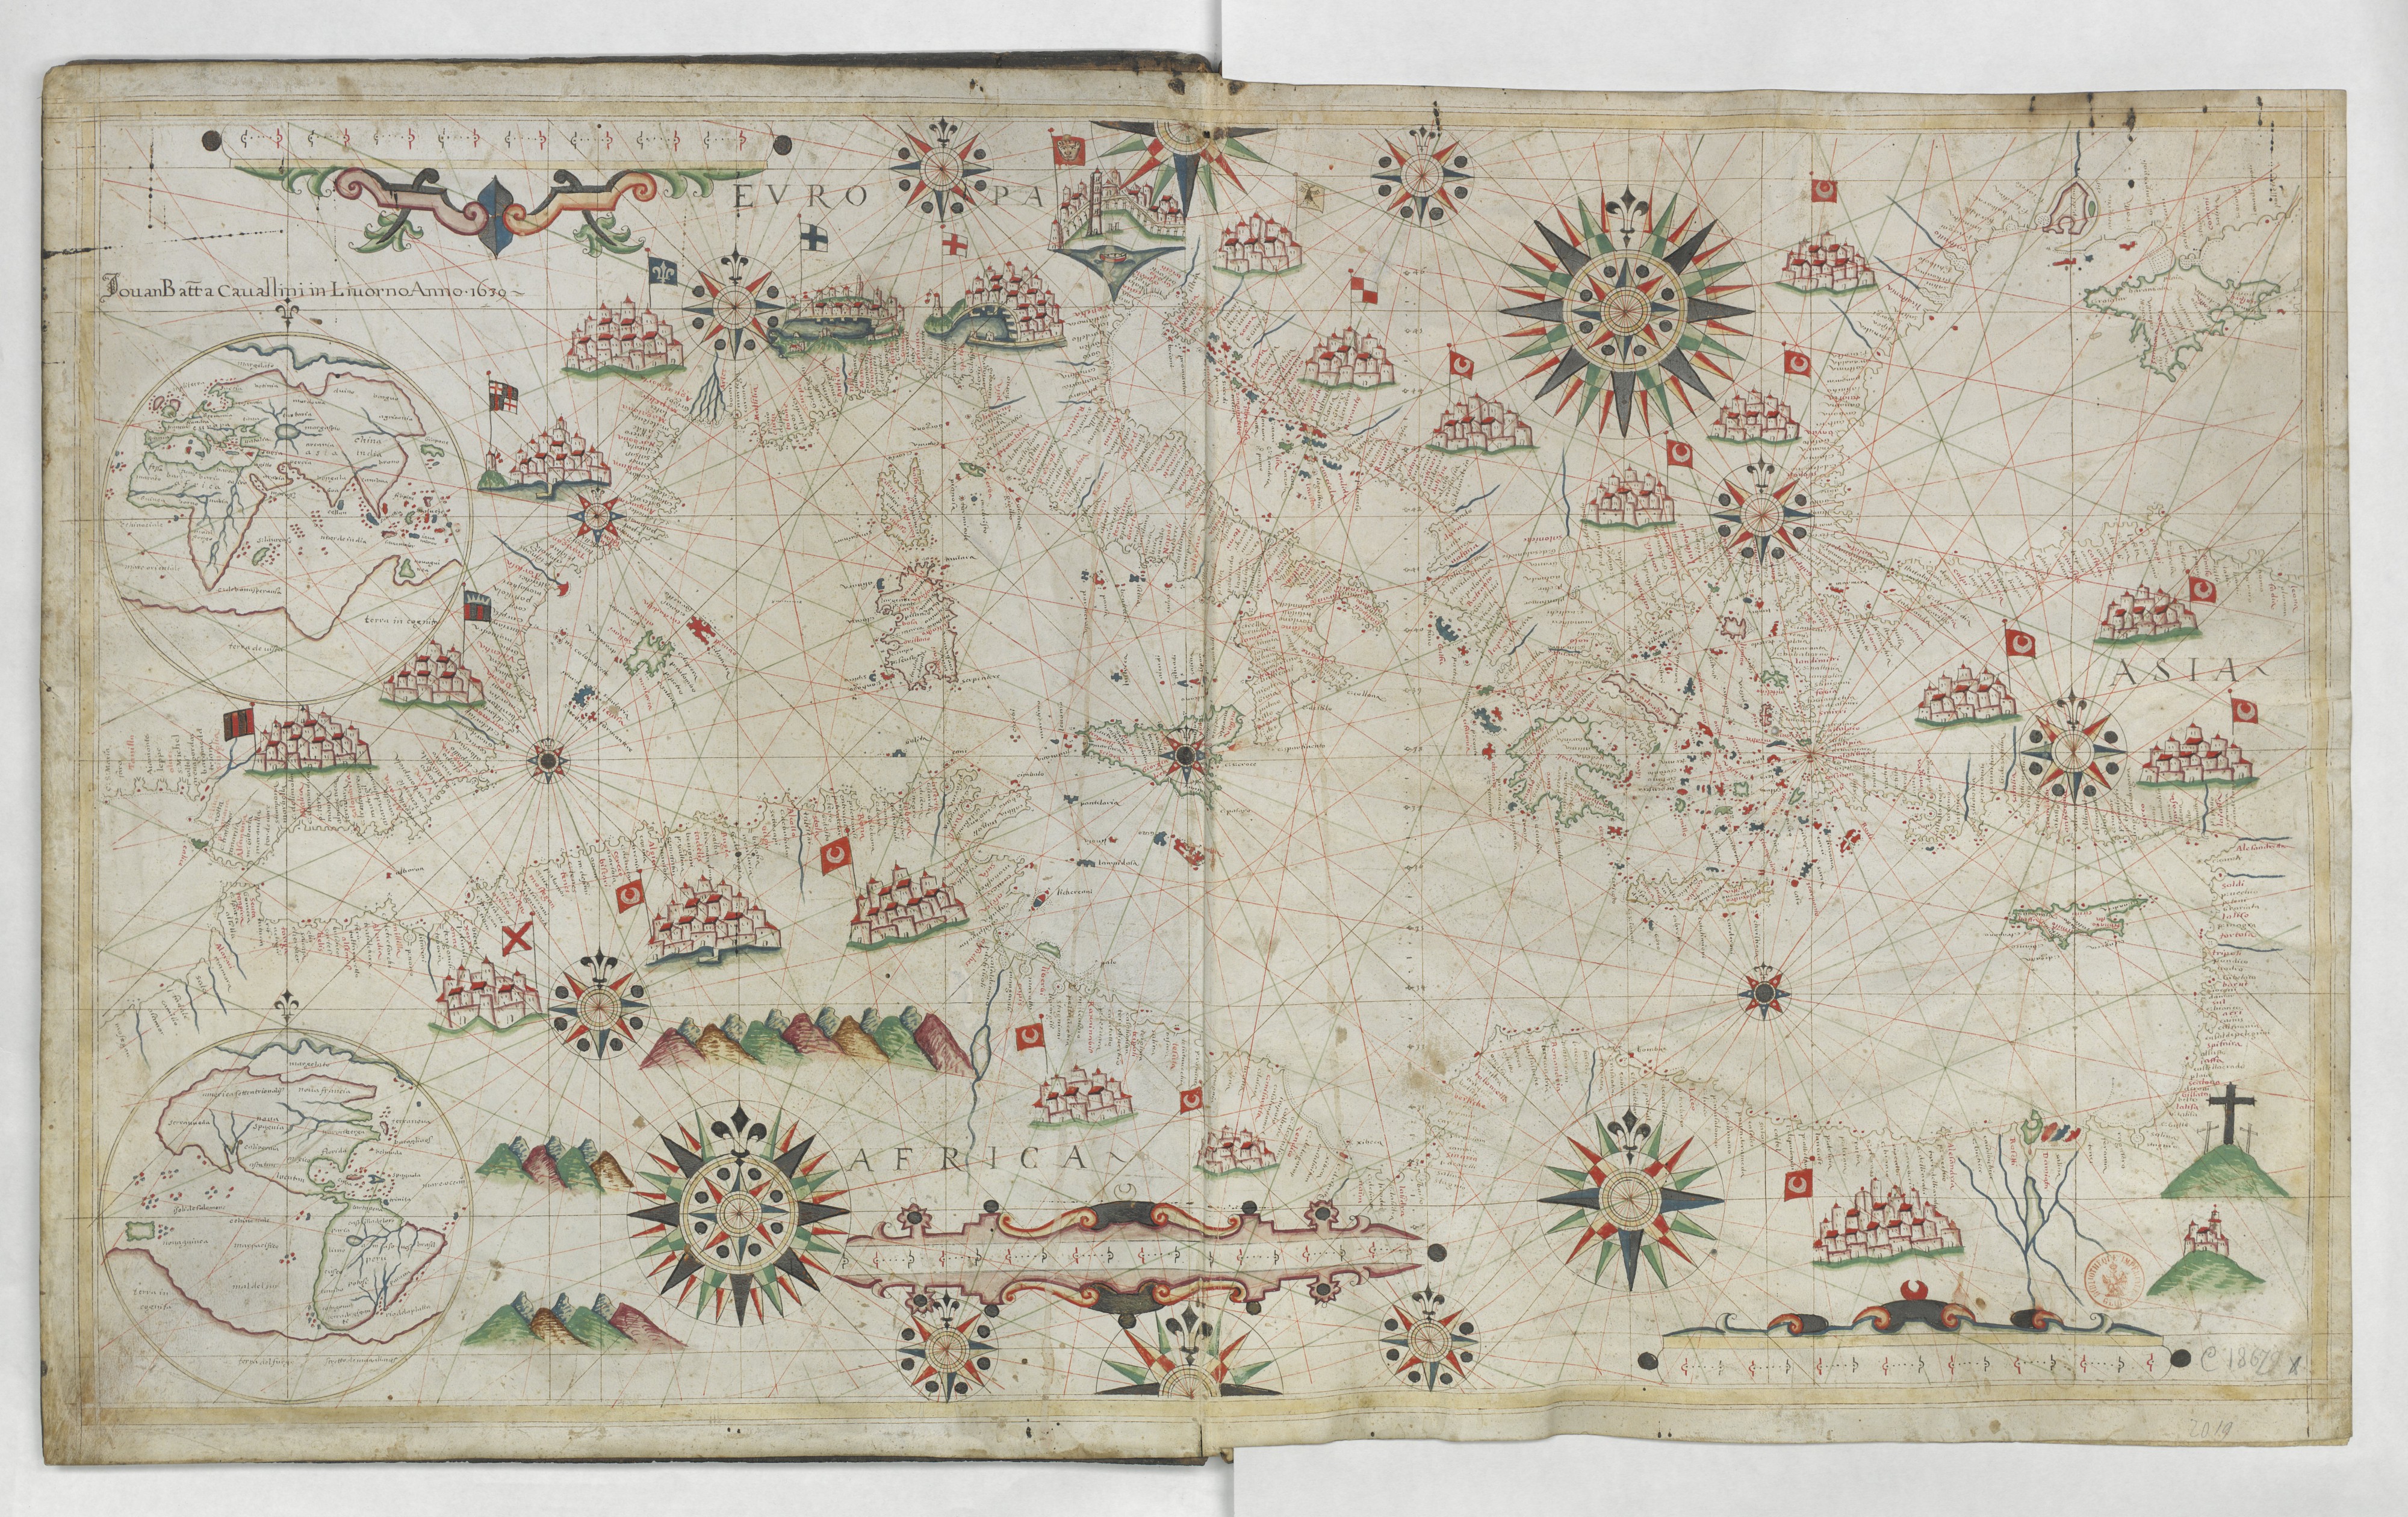 Cavallini. Atlas nautique de la Mer Méditerranée et d'une partie de la Mer Noire. 1639